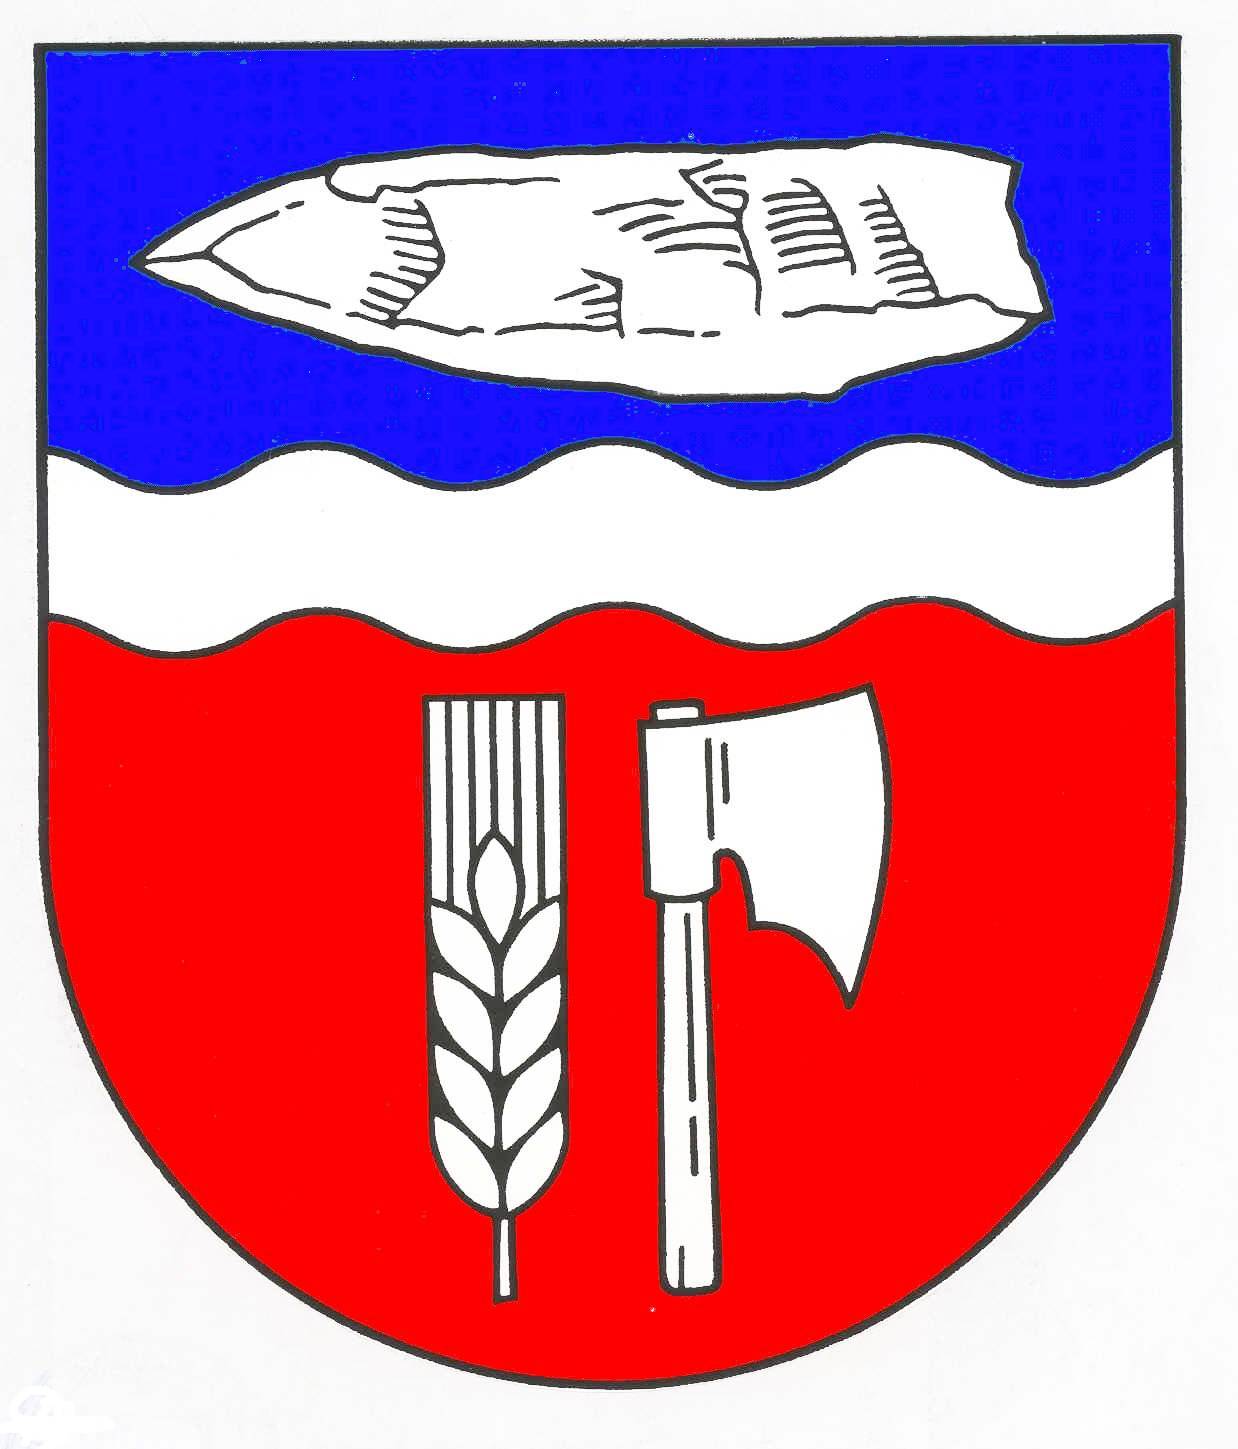 Wappen Gemeinde Bühnsdorf, Kreis Segeberg